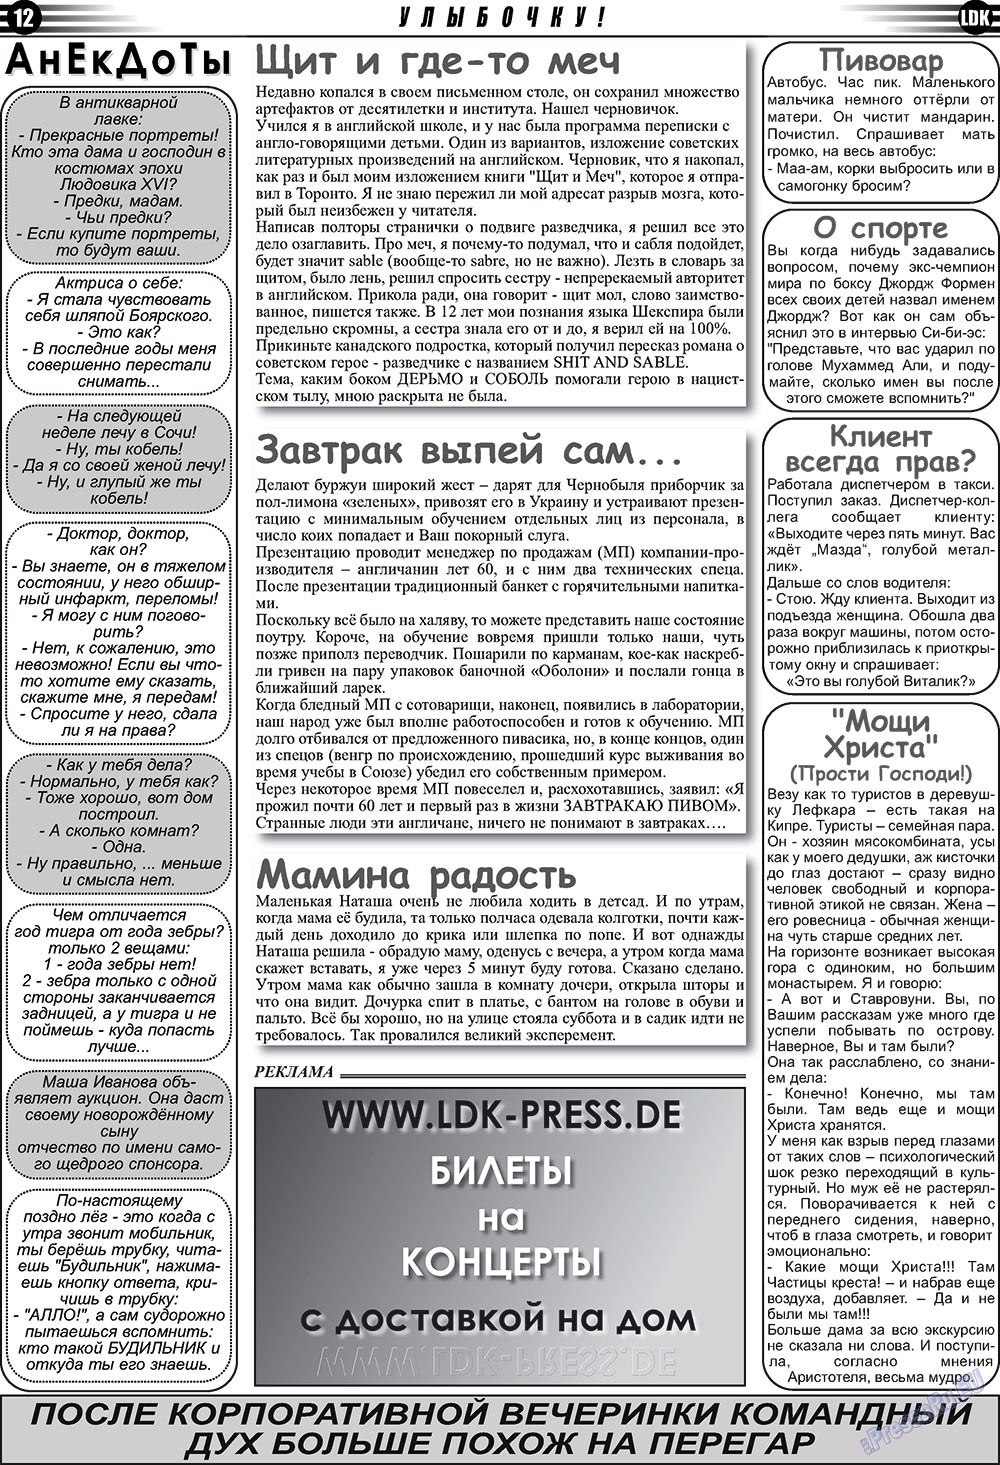 LDK по-русски (газета). 2010 год, номер 1, стр. 12